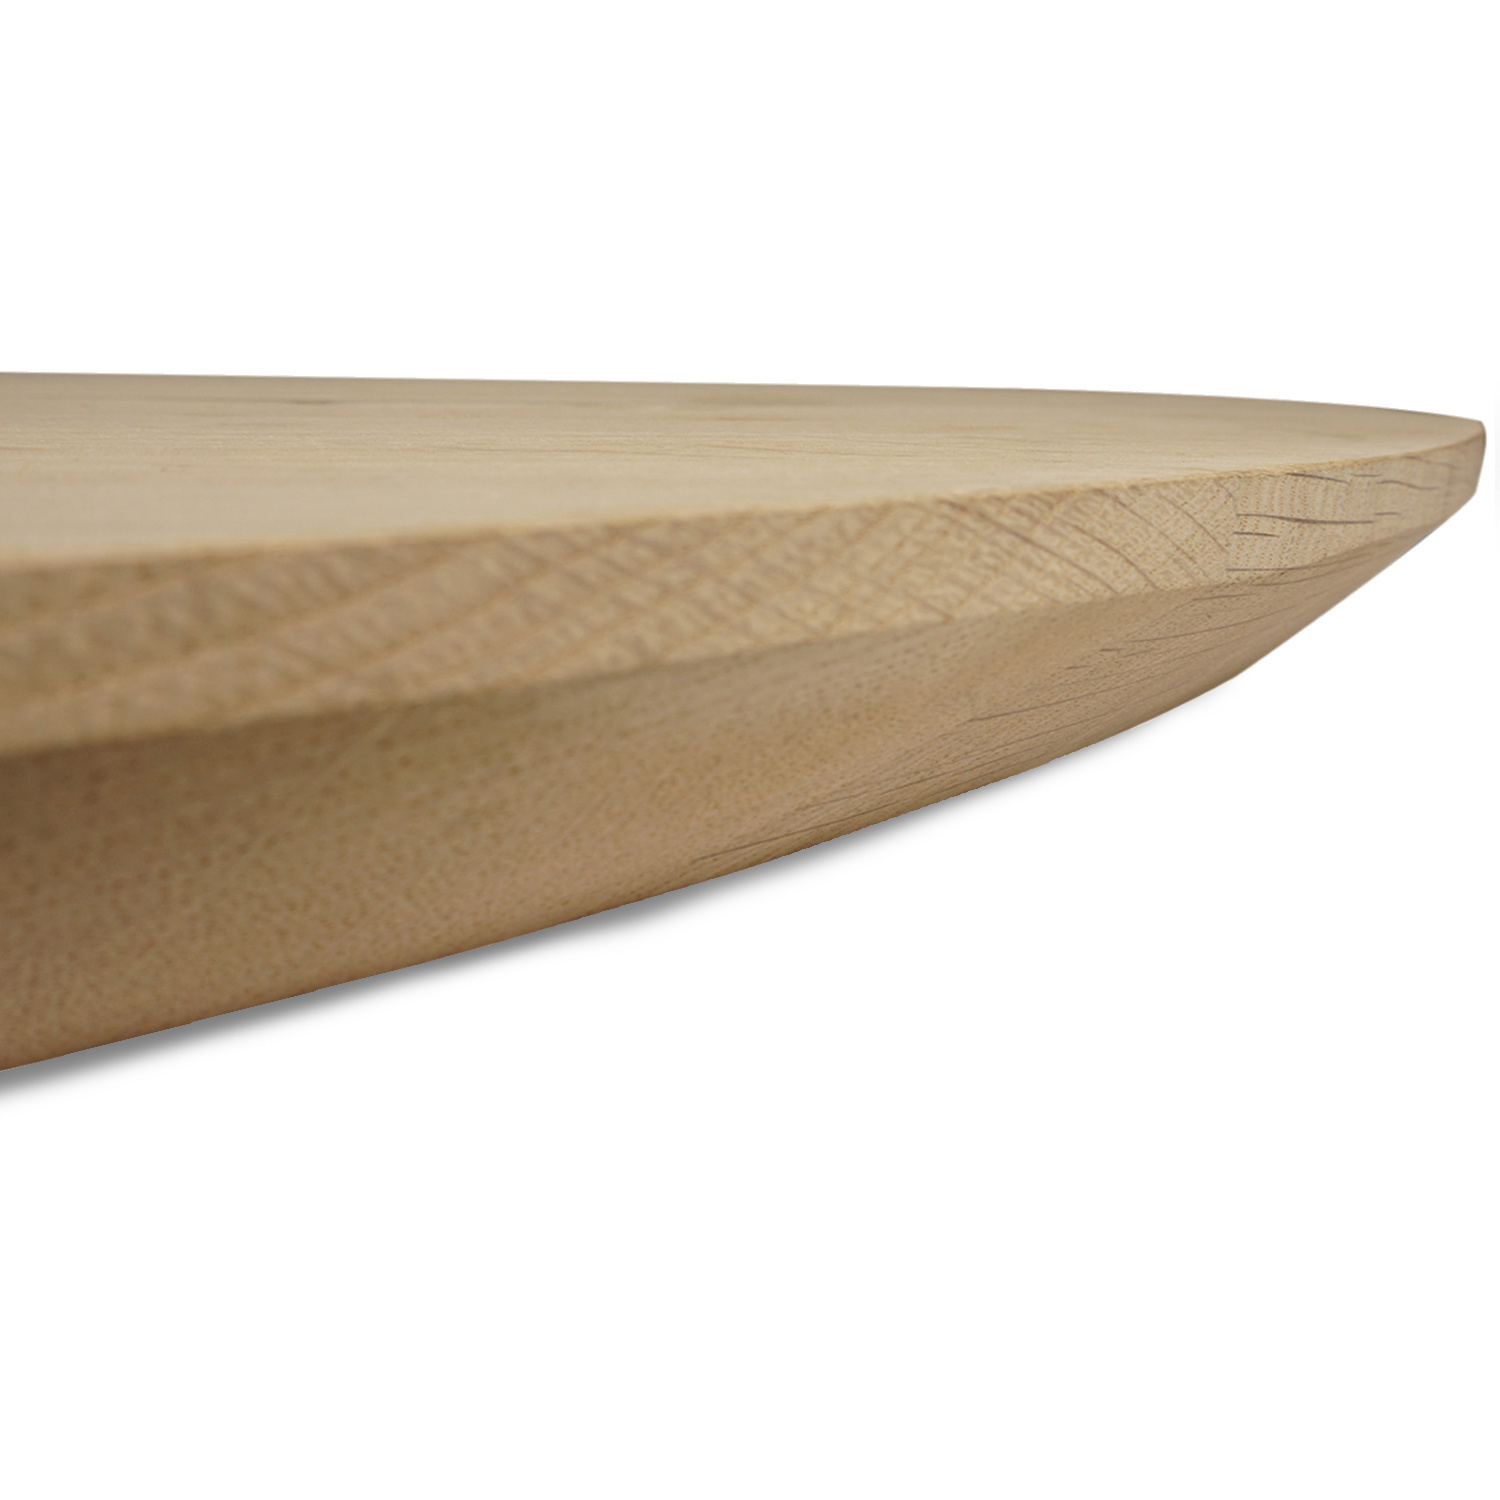  Eiken tafelblad rond - 4 cm dik (1-laag) - Diverse afmetingen - optioneel geborsteld - foutvrij Europees eikenhout - met brede lamellen (circa 10-12 cm) - verlijmd kd 10-12%